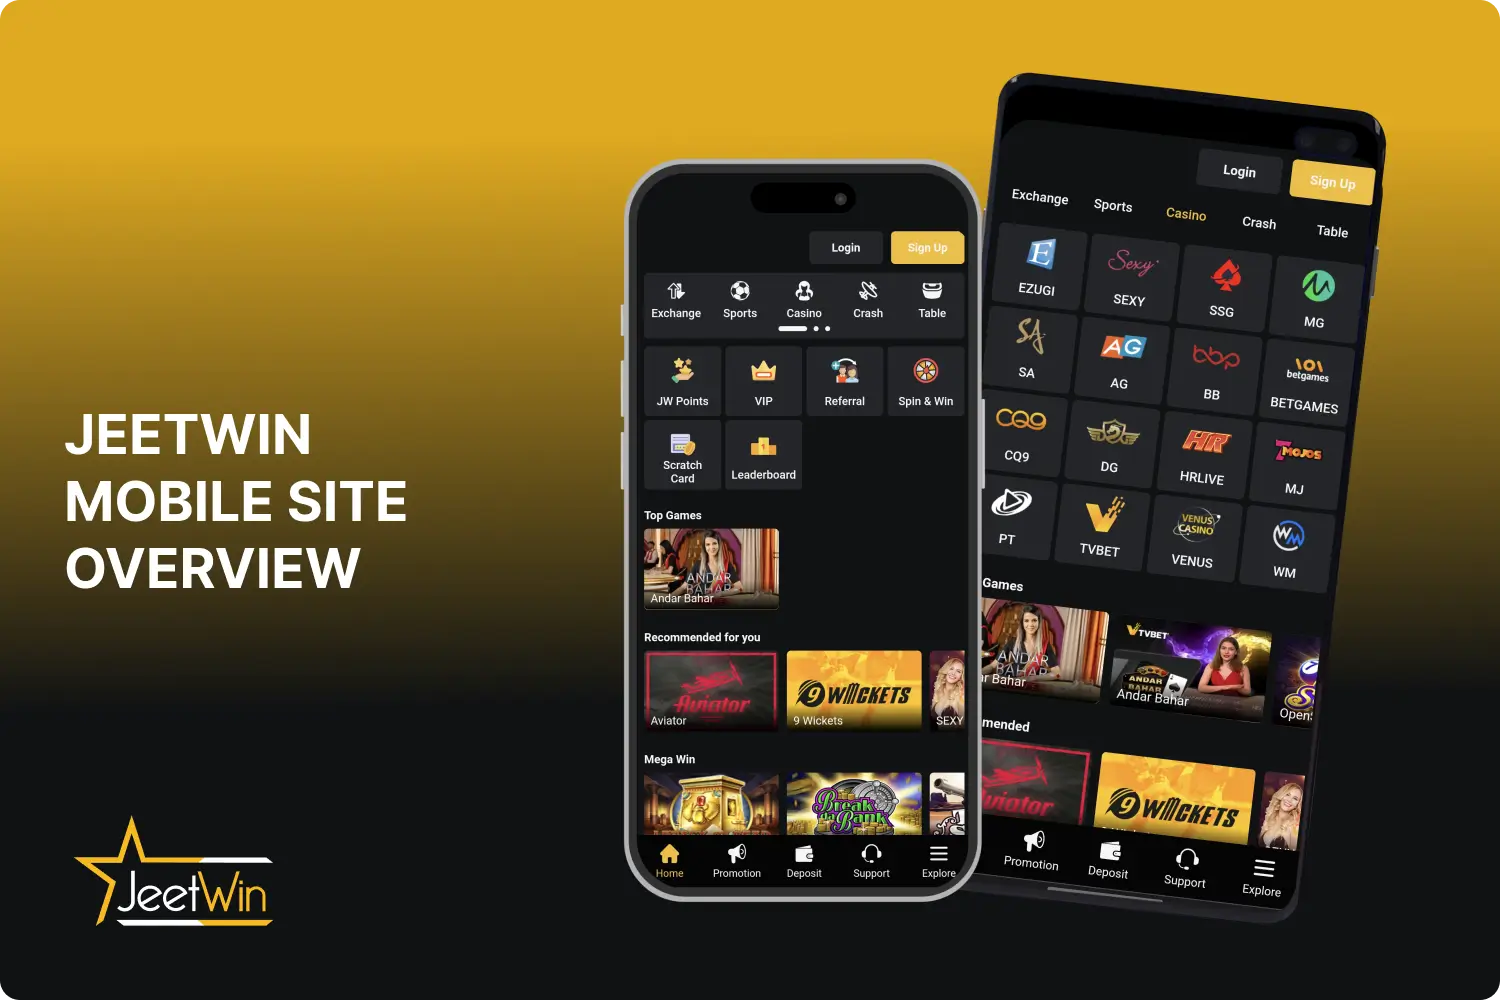 जीतविन कैसीनो का अनुकूलित मोबाइल संस्करण भारत के उपयोगकर्ताओं को स्मार्टफोन ब्राउज़र के माध्यम से साइट तक पहुंचने और साइट के मुख्य संस्करण की तरह सभी टैब तक पहुंचने की अनुमति देता है।